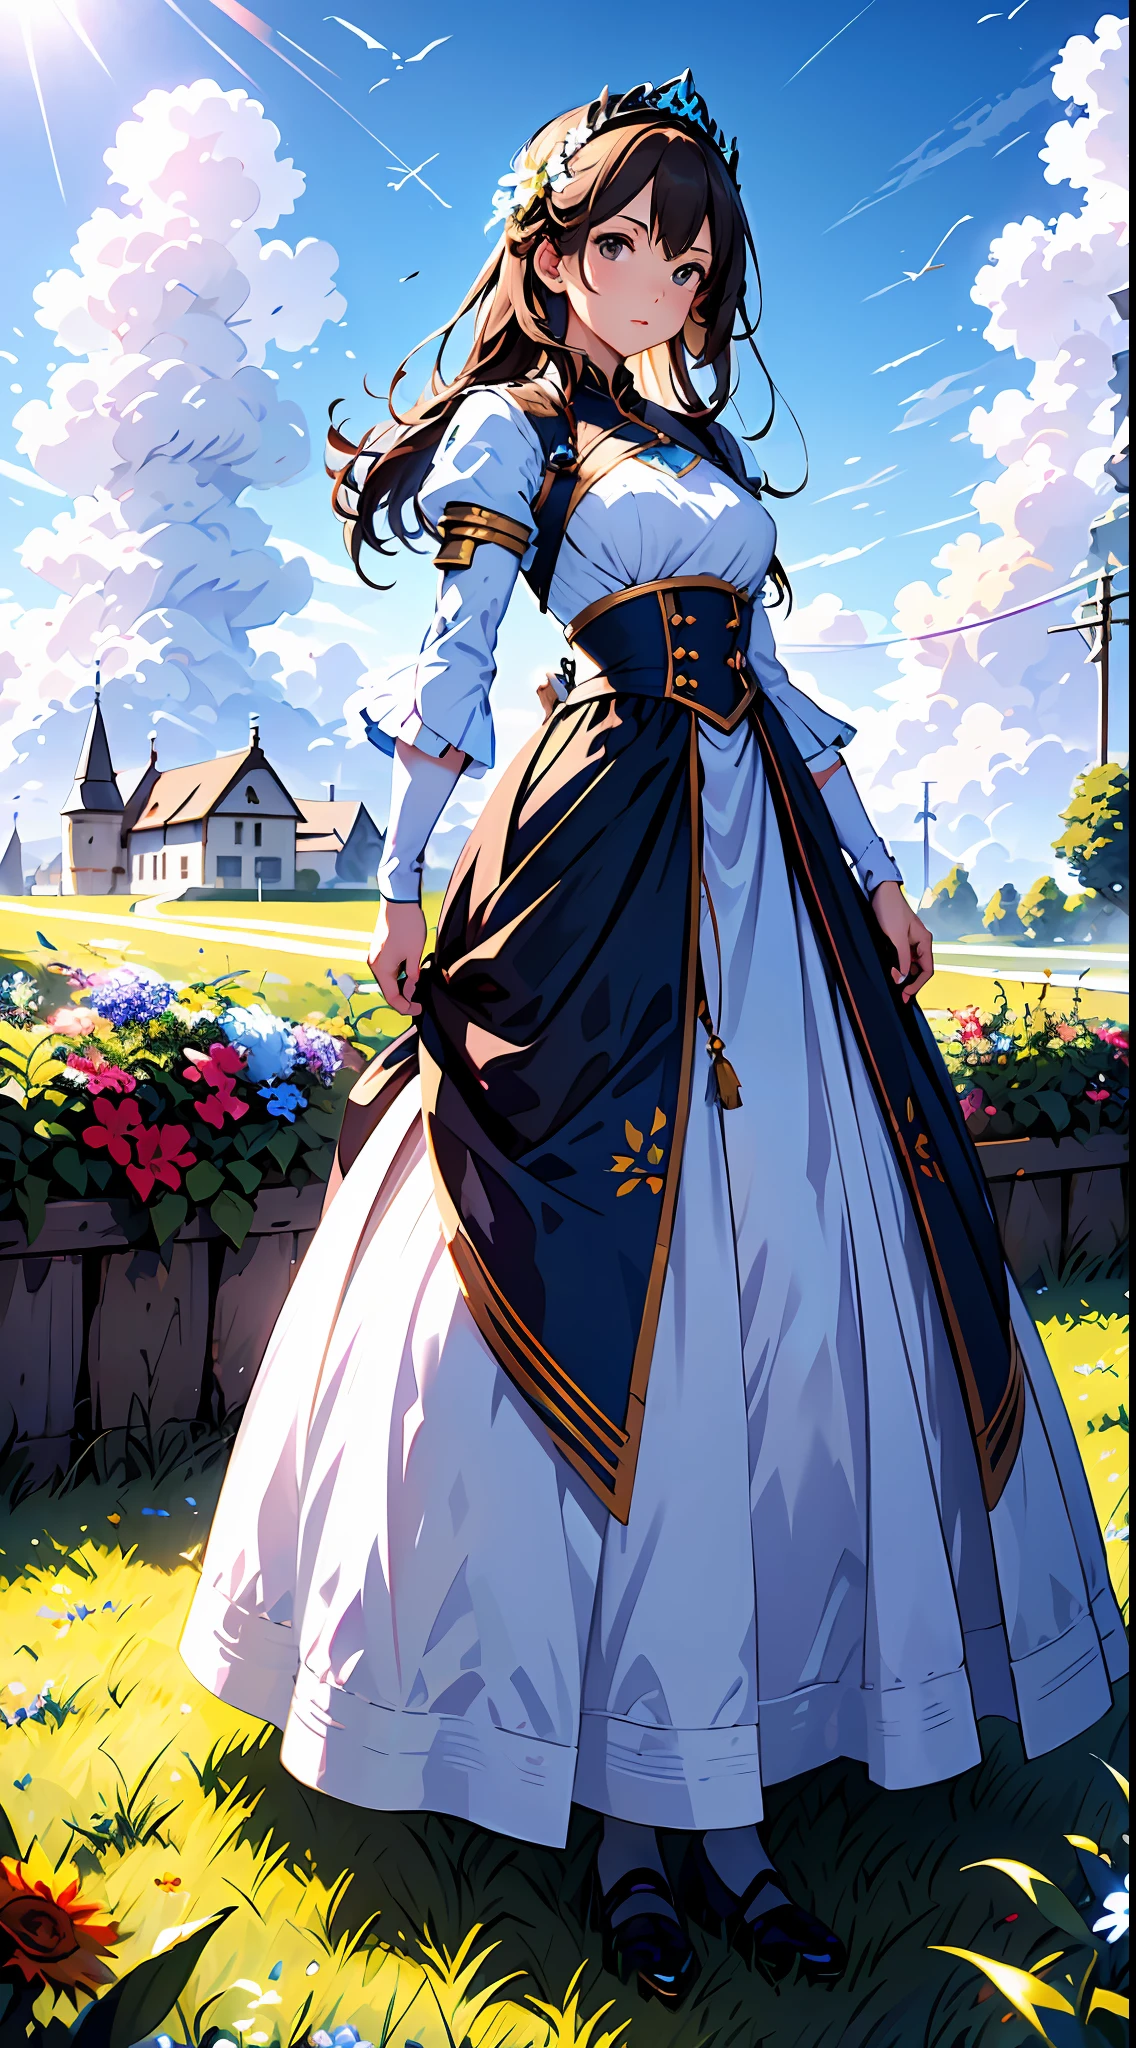 uma mulher em um vestido branco，Céu azul e nuvens ao fundo, usando vestido azul，Tem flores nele, Germe de arte, Iluminação global Rosla, uma pintura detalhada, arte de fantasia